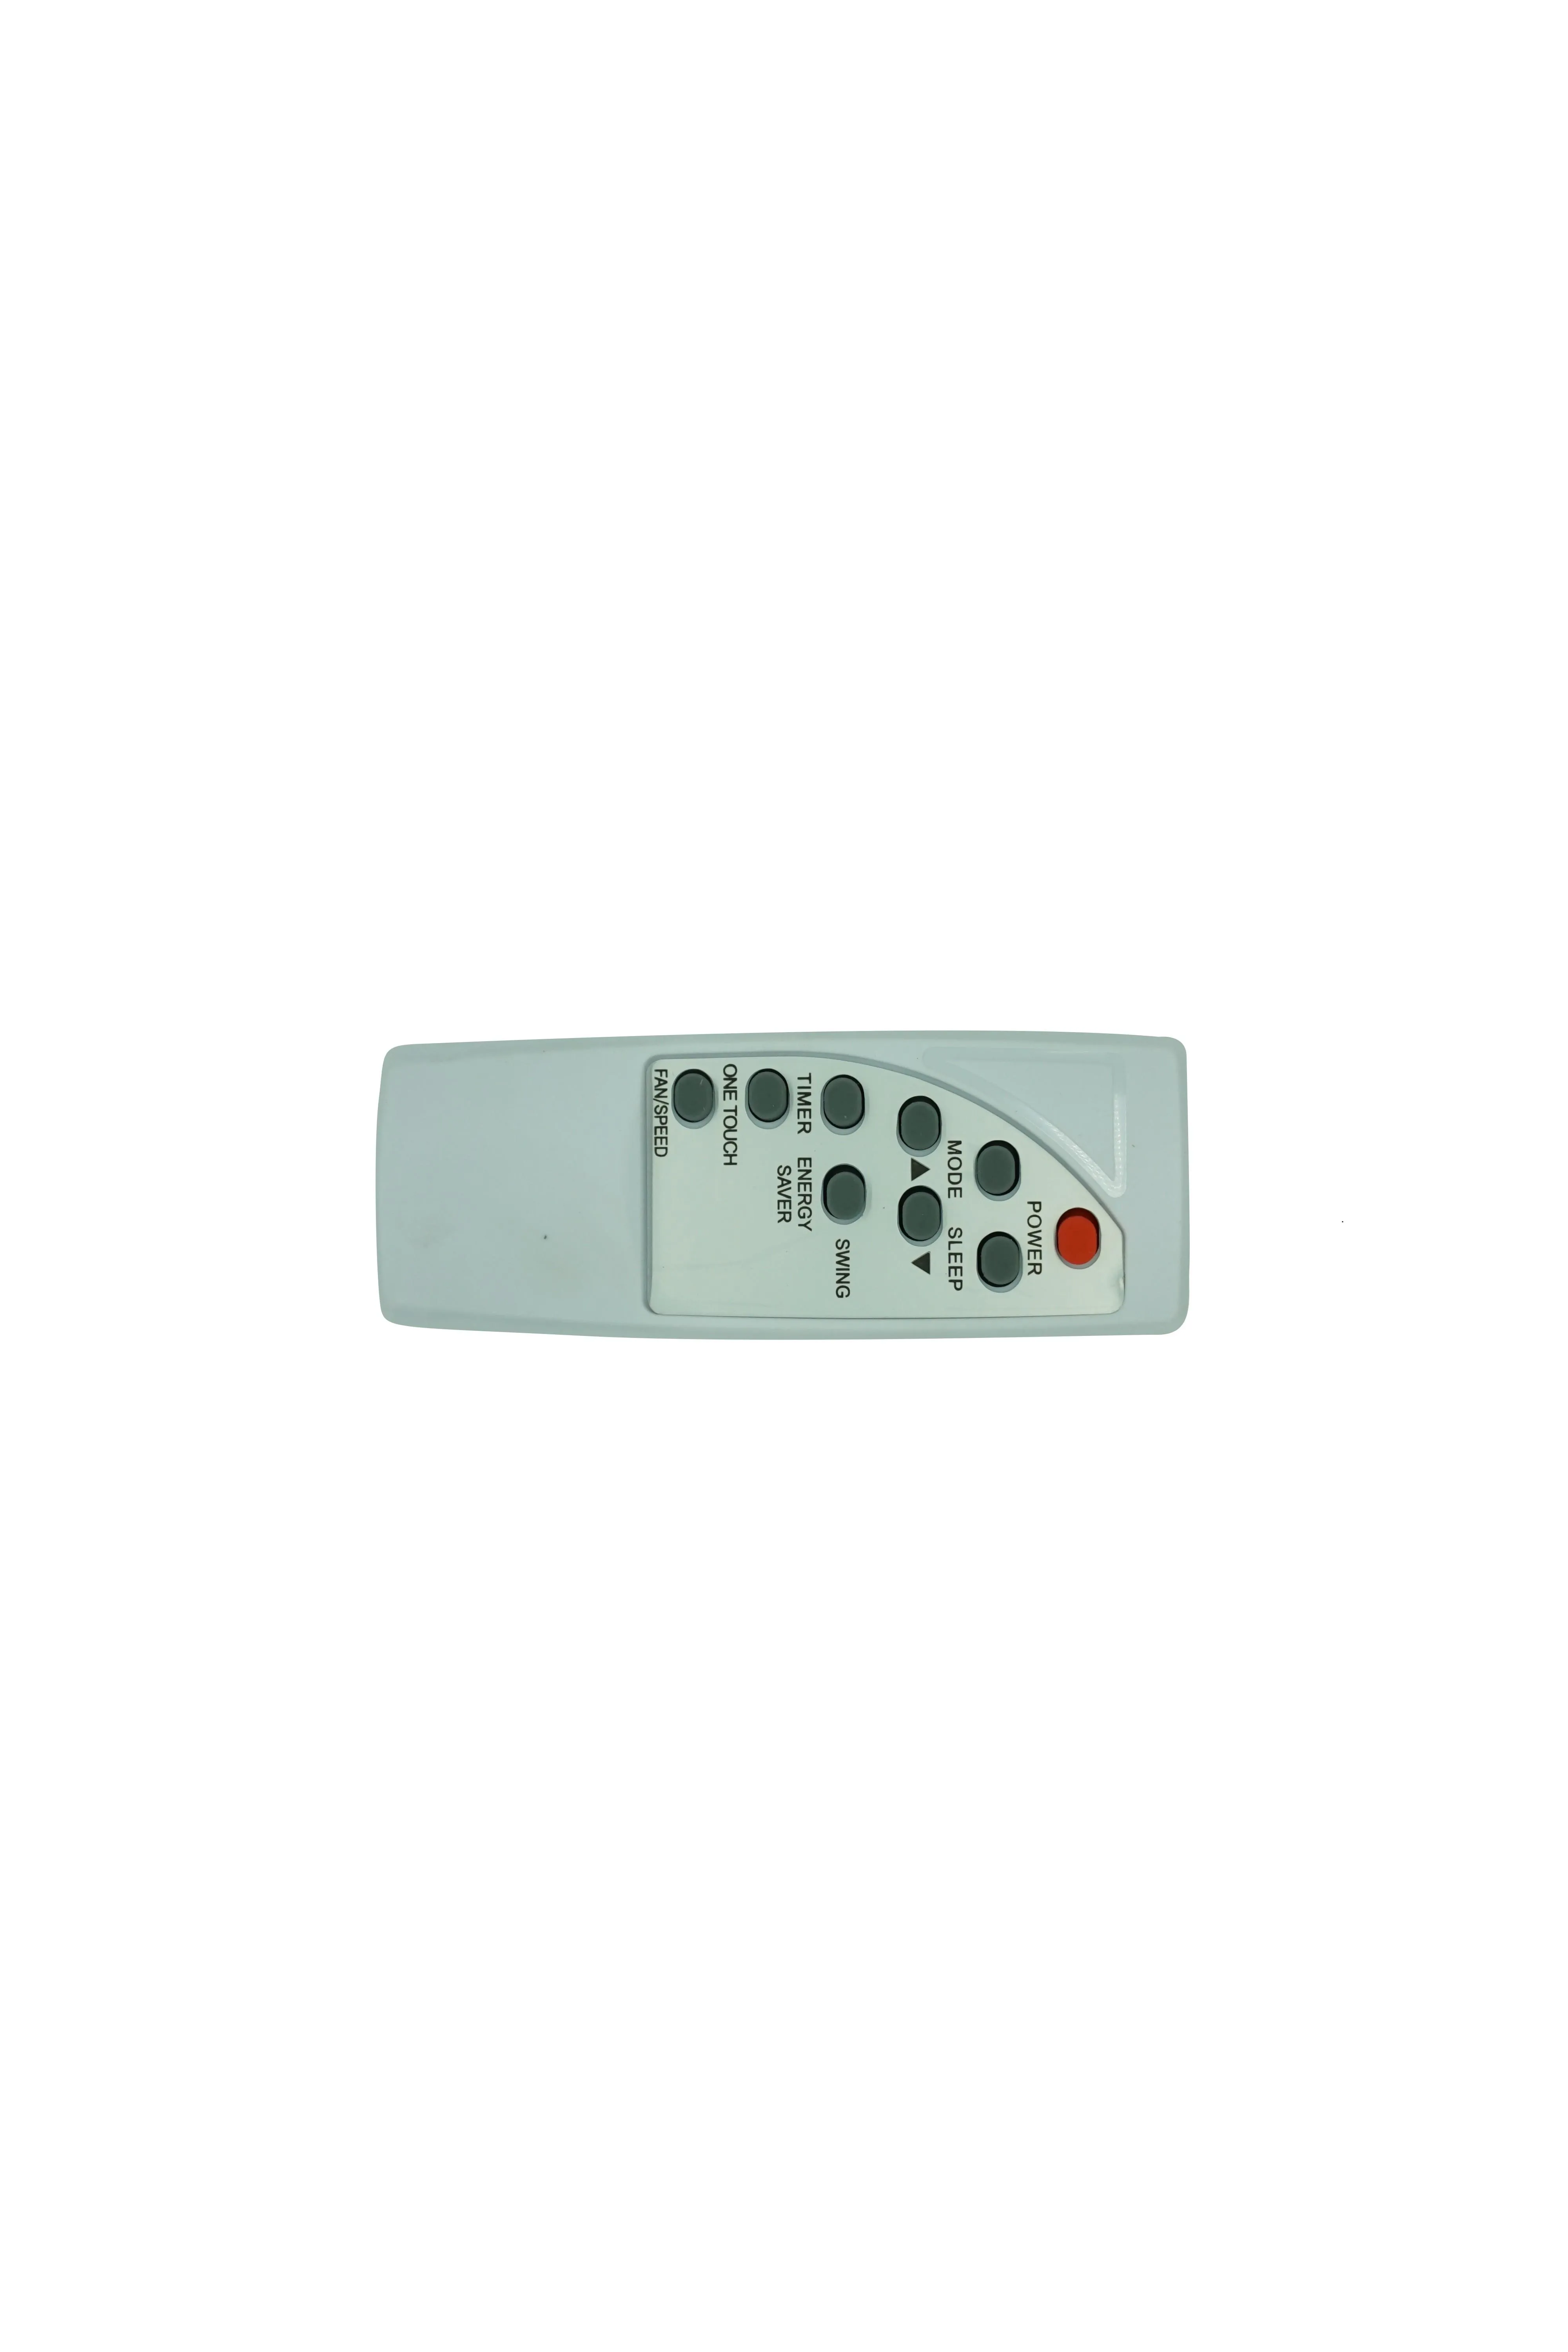 Télécommande pour le climatiseur de fenêtre Haier RG32A / E